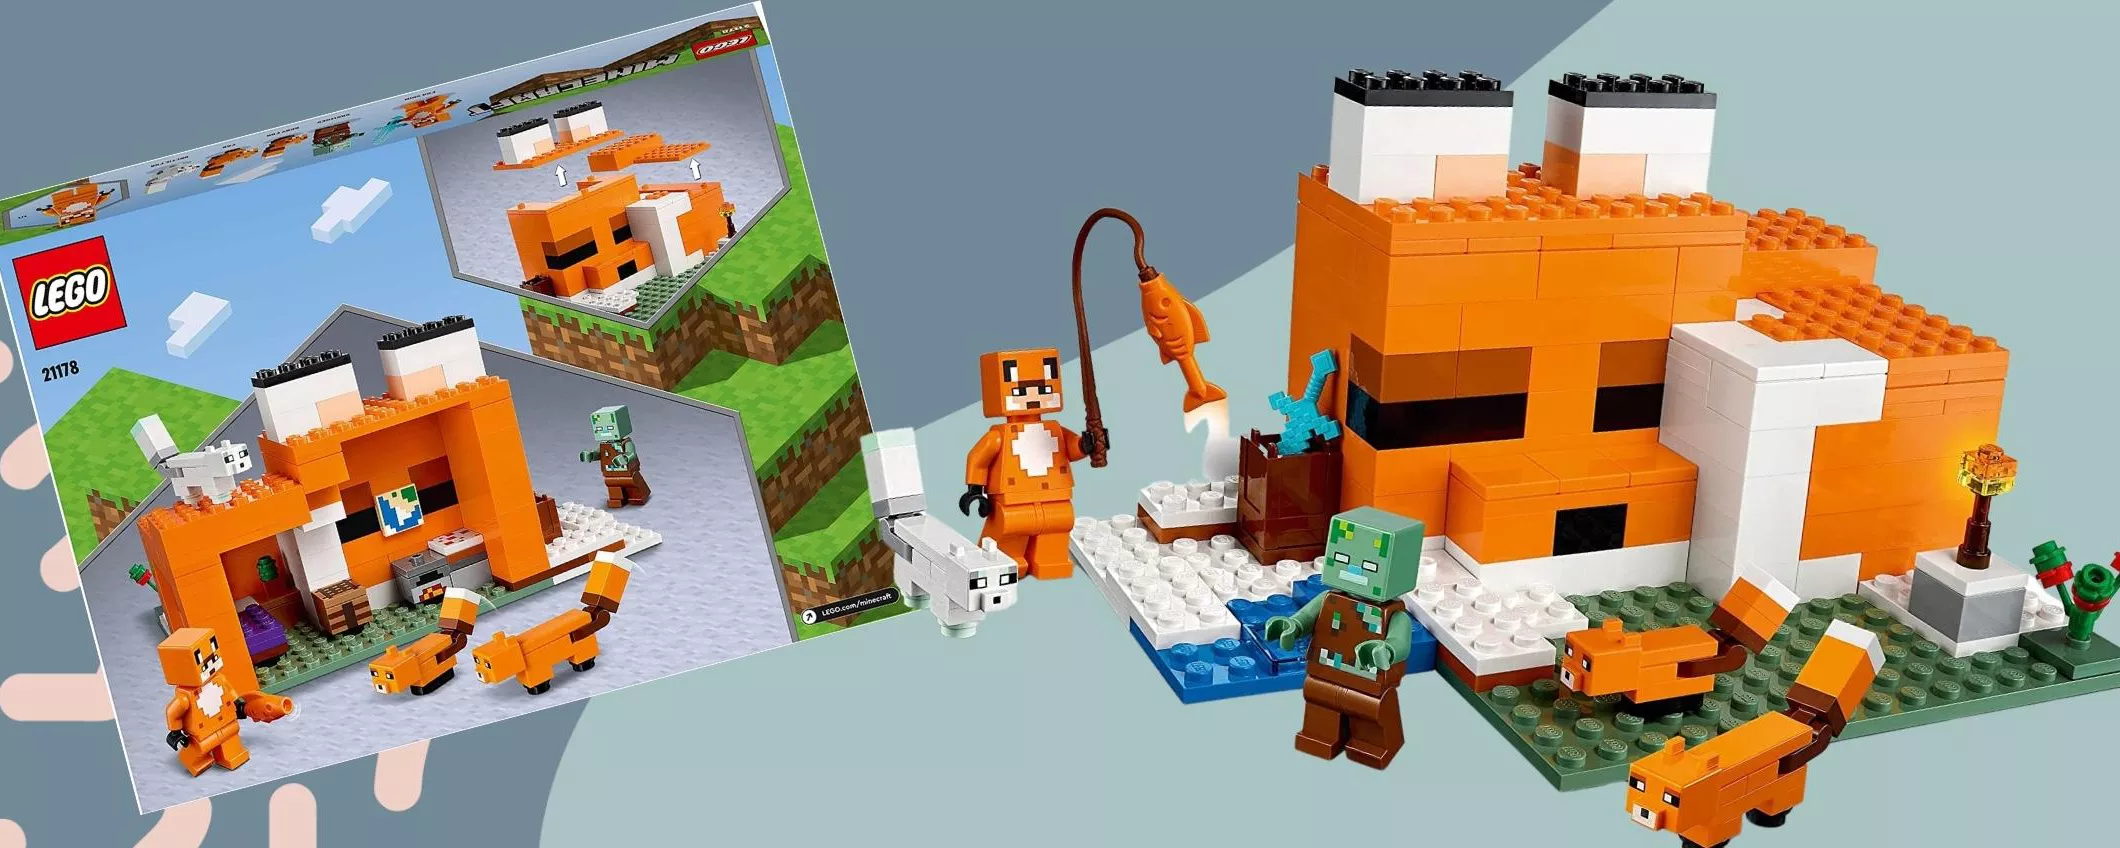 Mai troppo tardi per un set LEGO, soprattutto se costa pochissimo